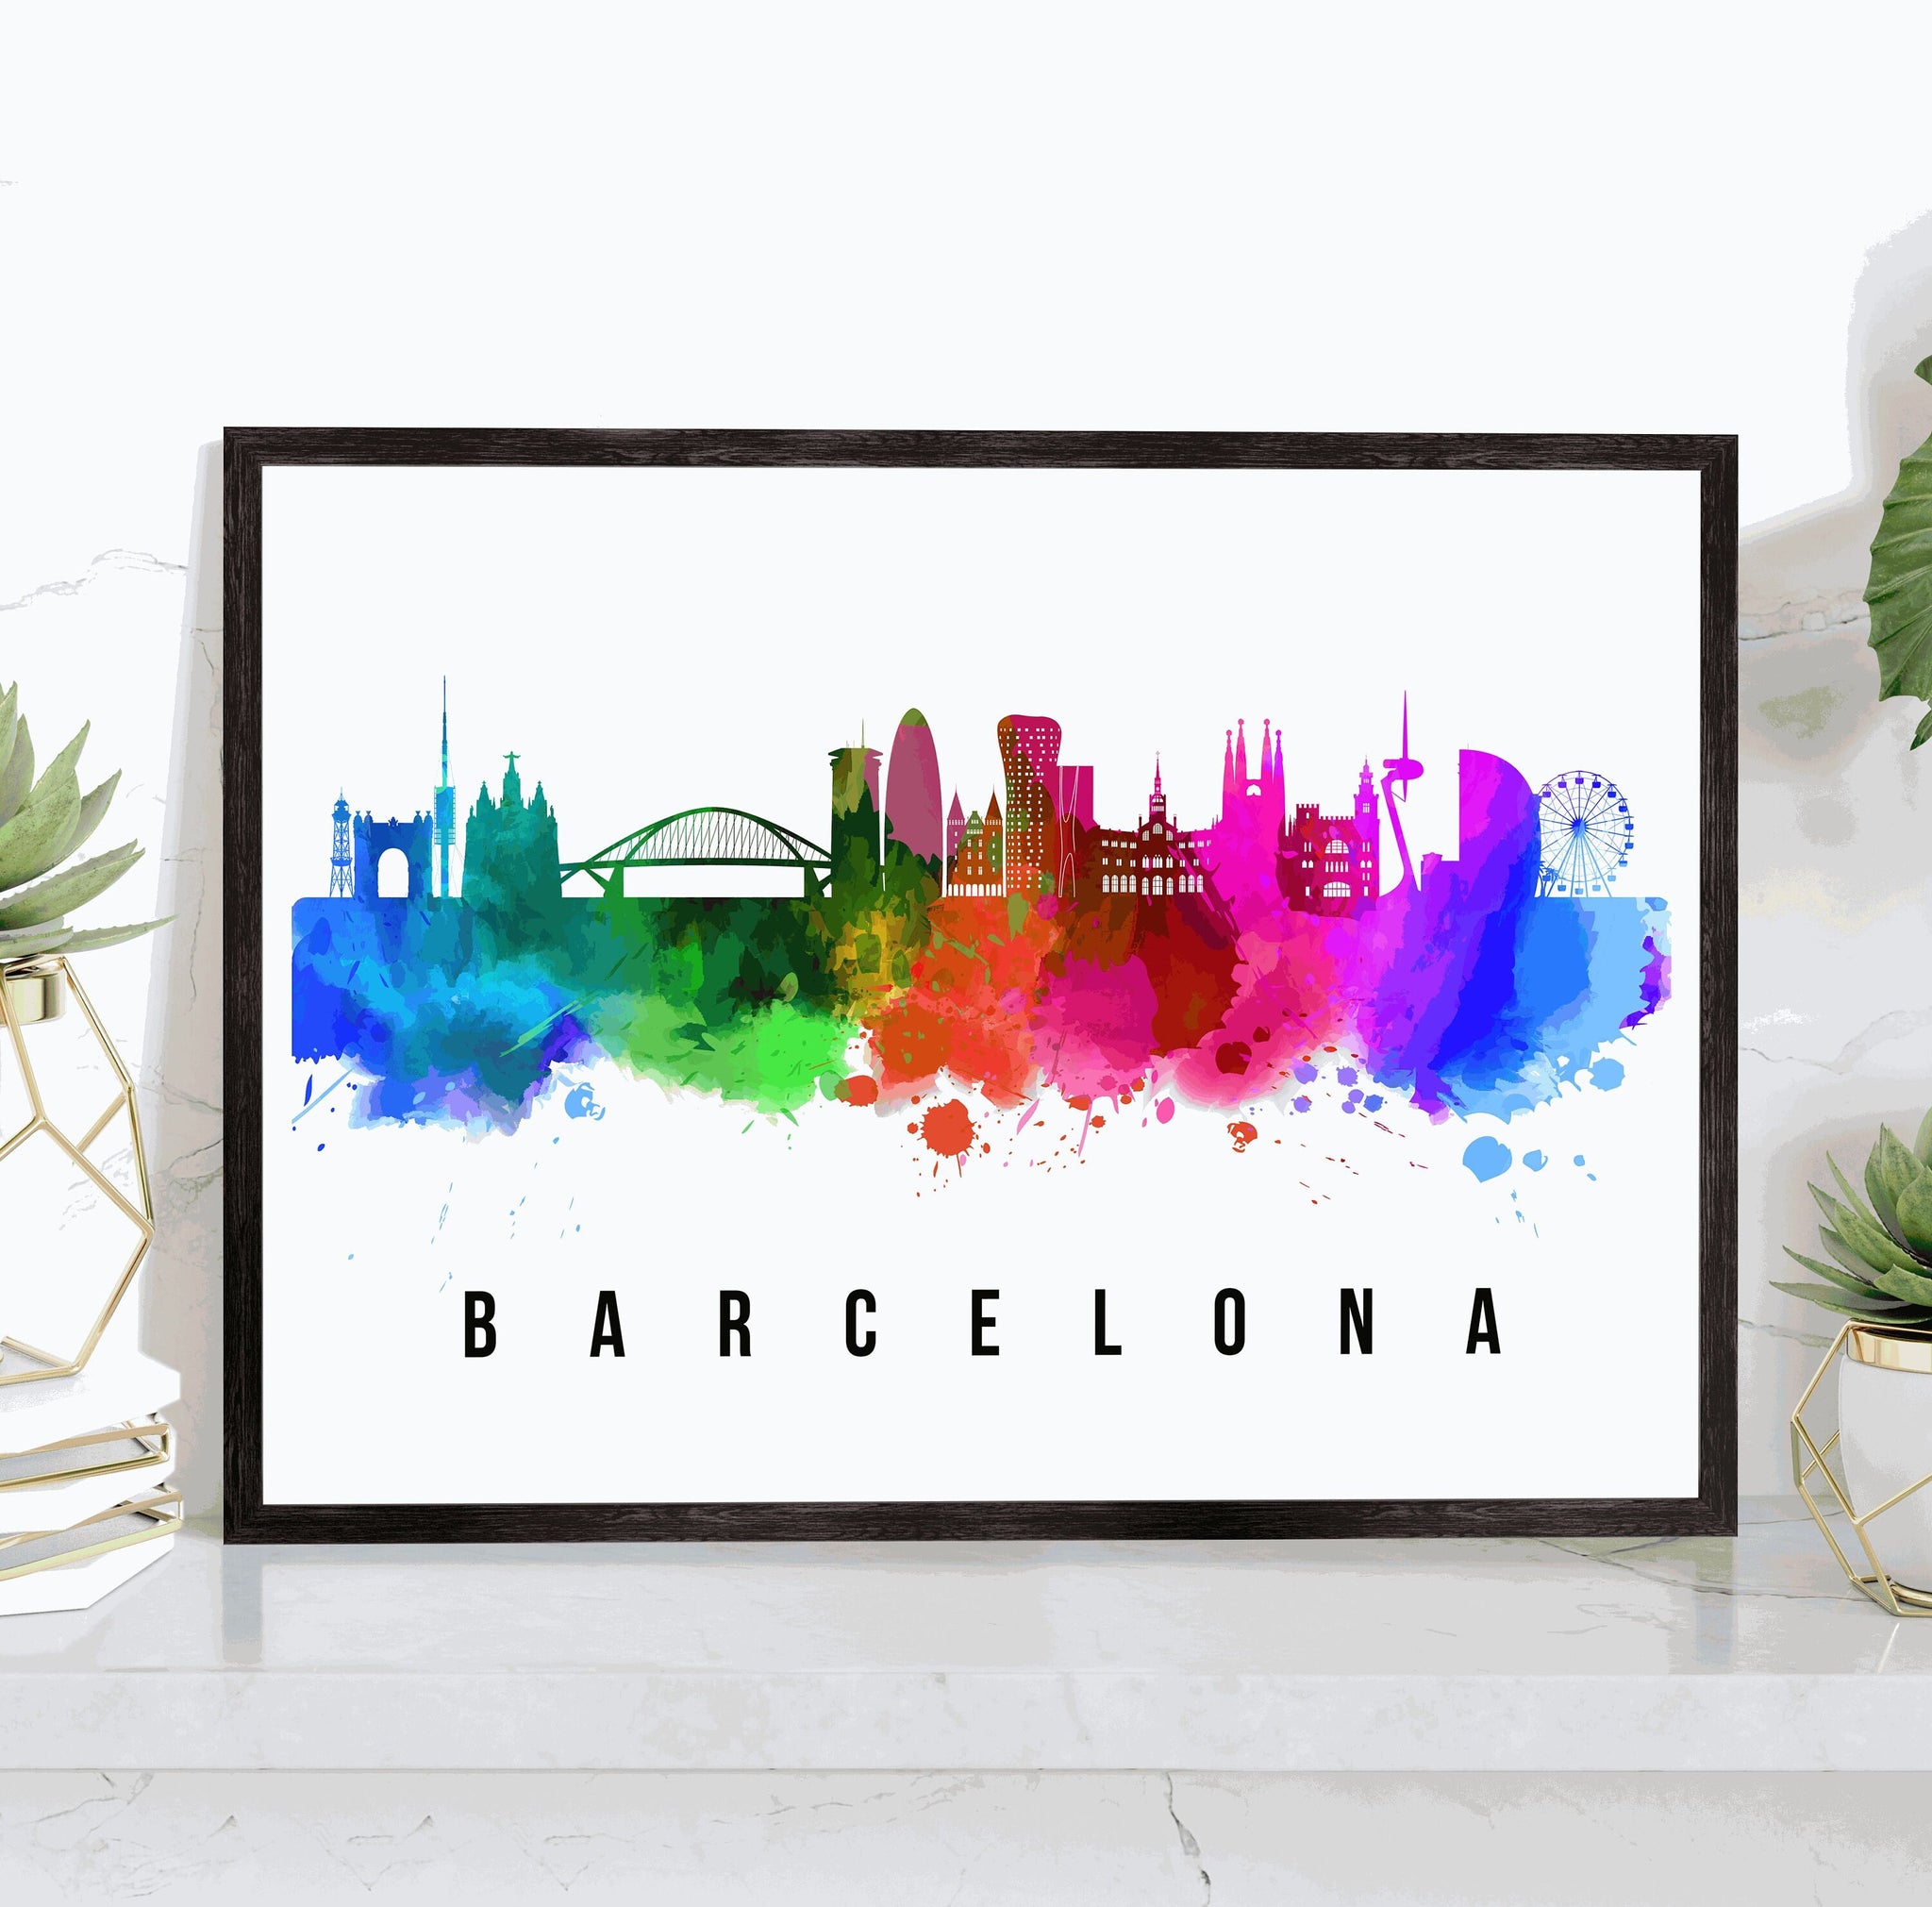 BARCELONA - SPAIN Poster,  Skyline Poster Cityscape and Landmark Barcelona Illustration Home Wall Art, Office Decor